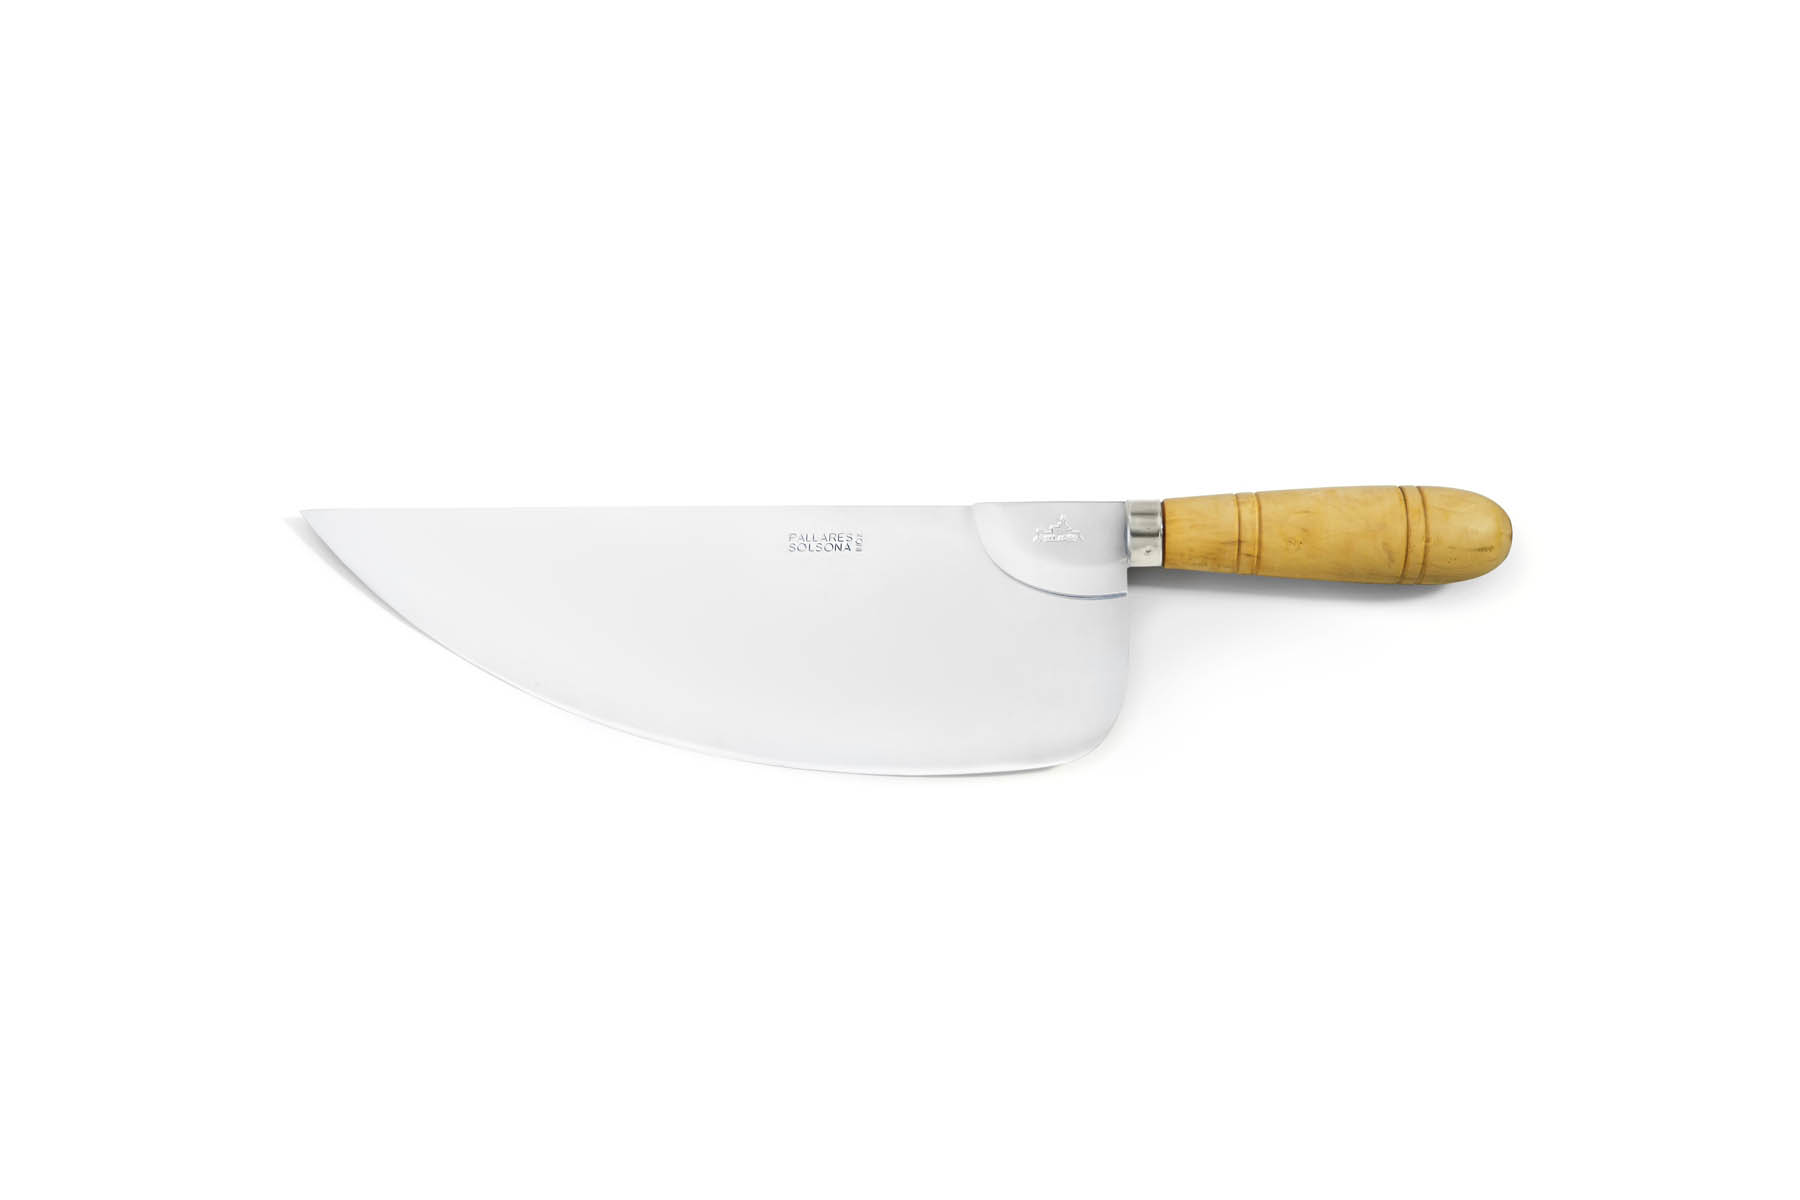 Couteau de cuisine Pallarès Solsona - Couteau couperet pour poisson 31 cm acier inox